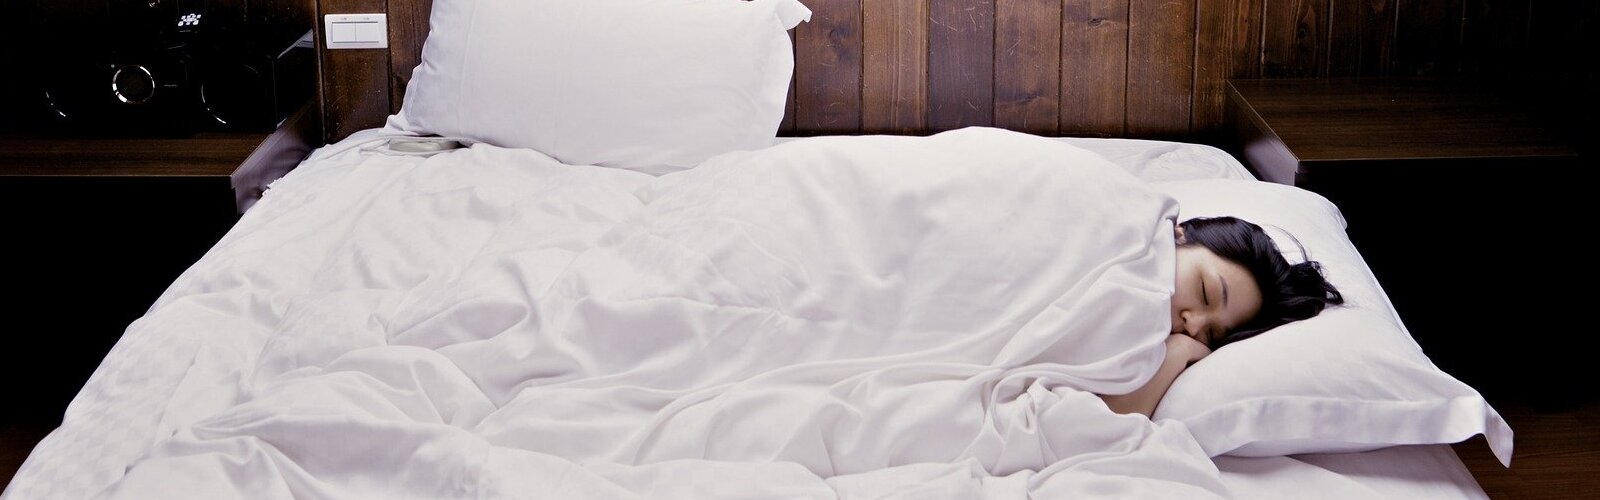 Dormir la siesta está determinado por nuestros genes, según un estudio de la Universidad de Murcia y el Massachusetts General Hospital